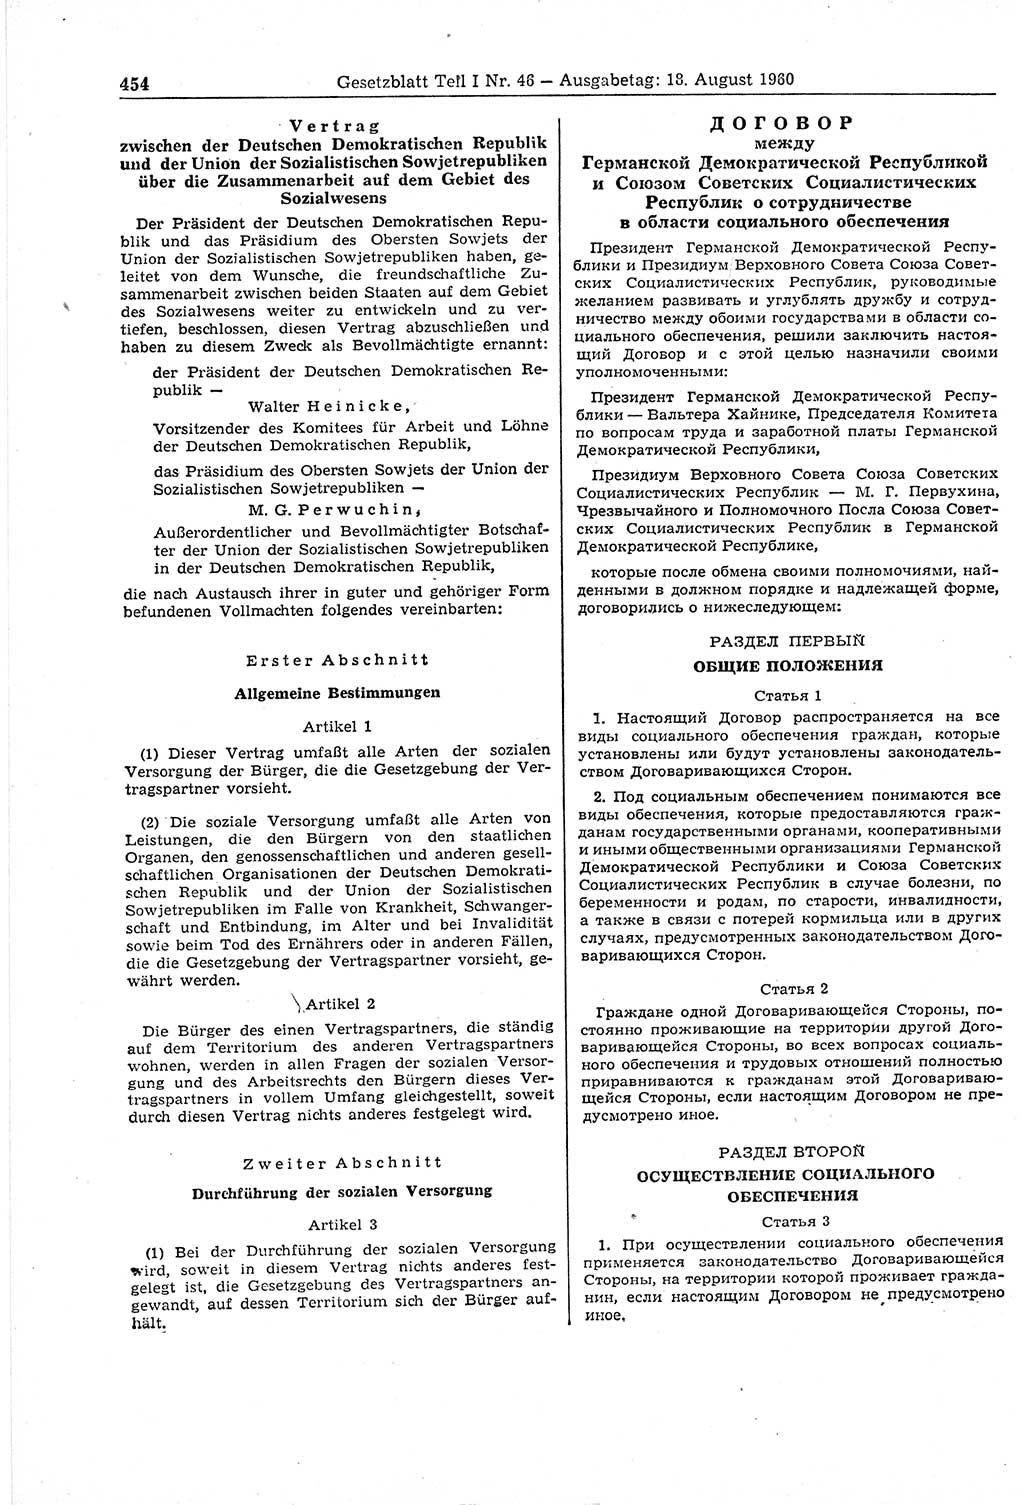 Gesetzblatt (GBl.) der Deutschen Demokratischen Republik (DDR) Teil Ⅰ 1960, Seite 454 (GBl. DDR Ⅰ 1960, S. 454)